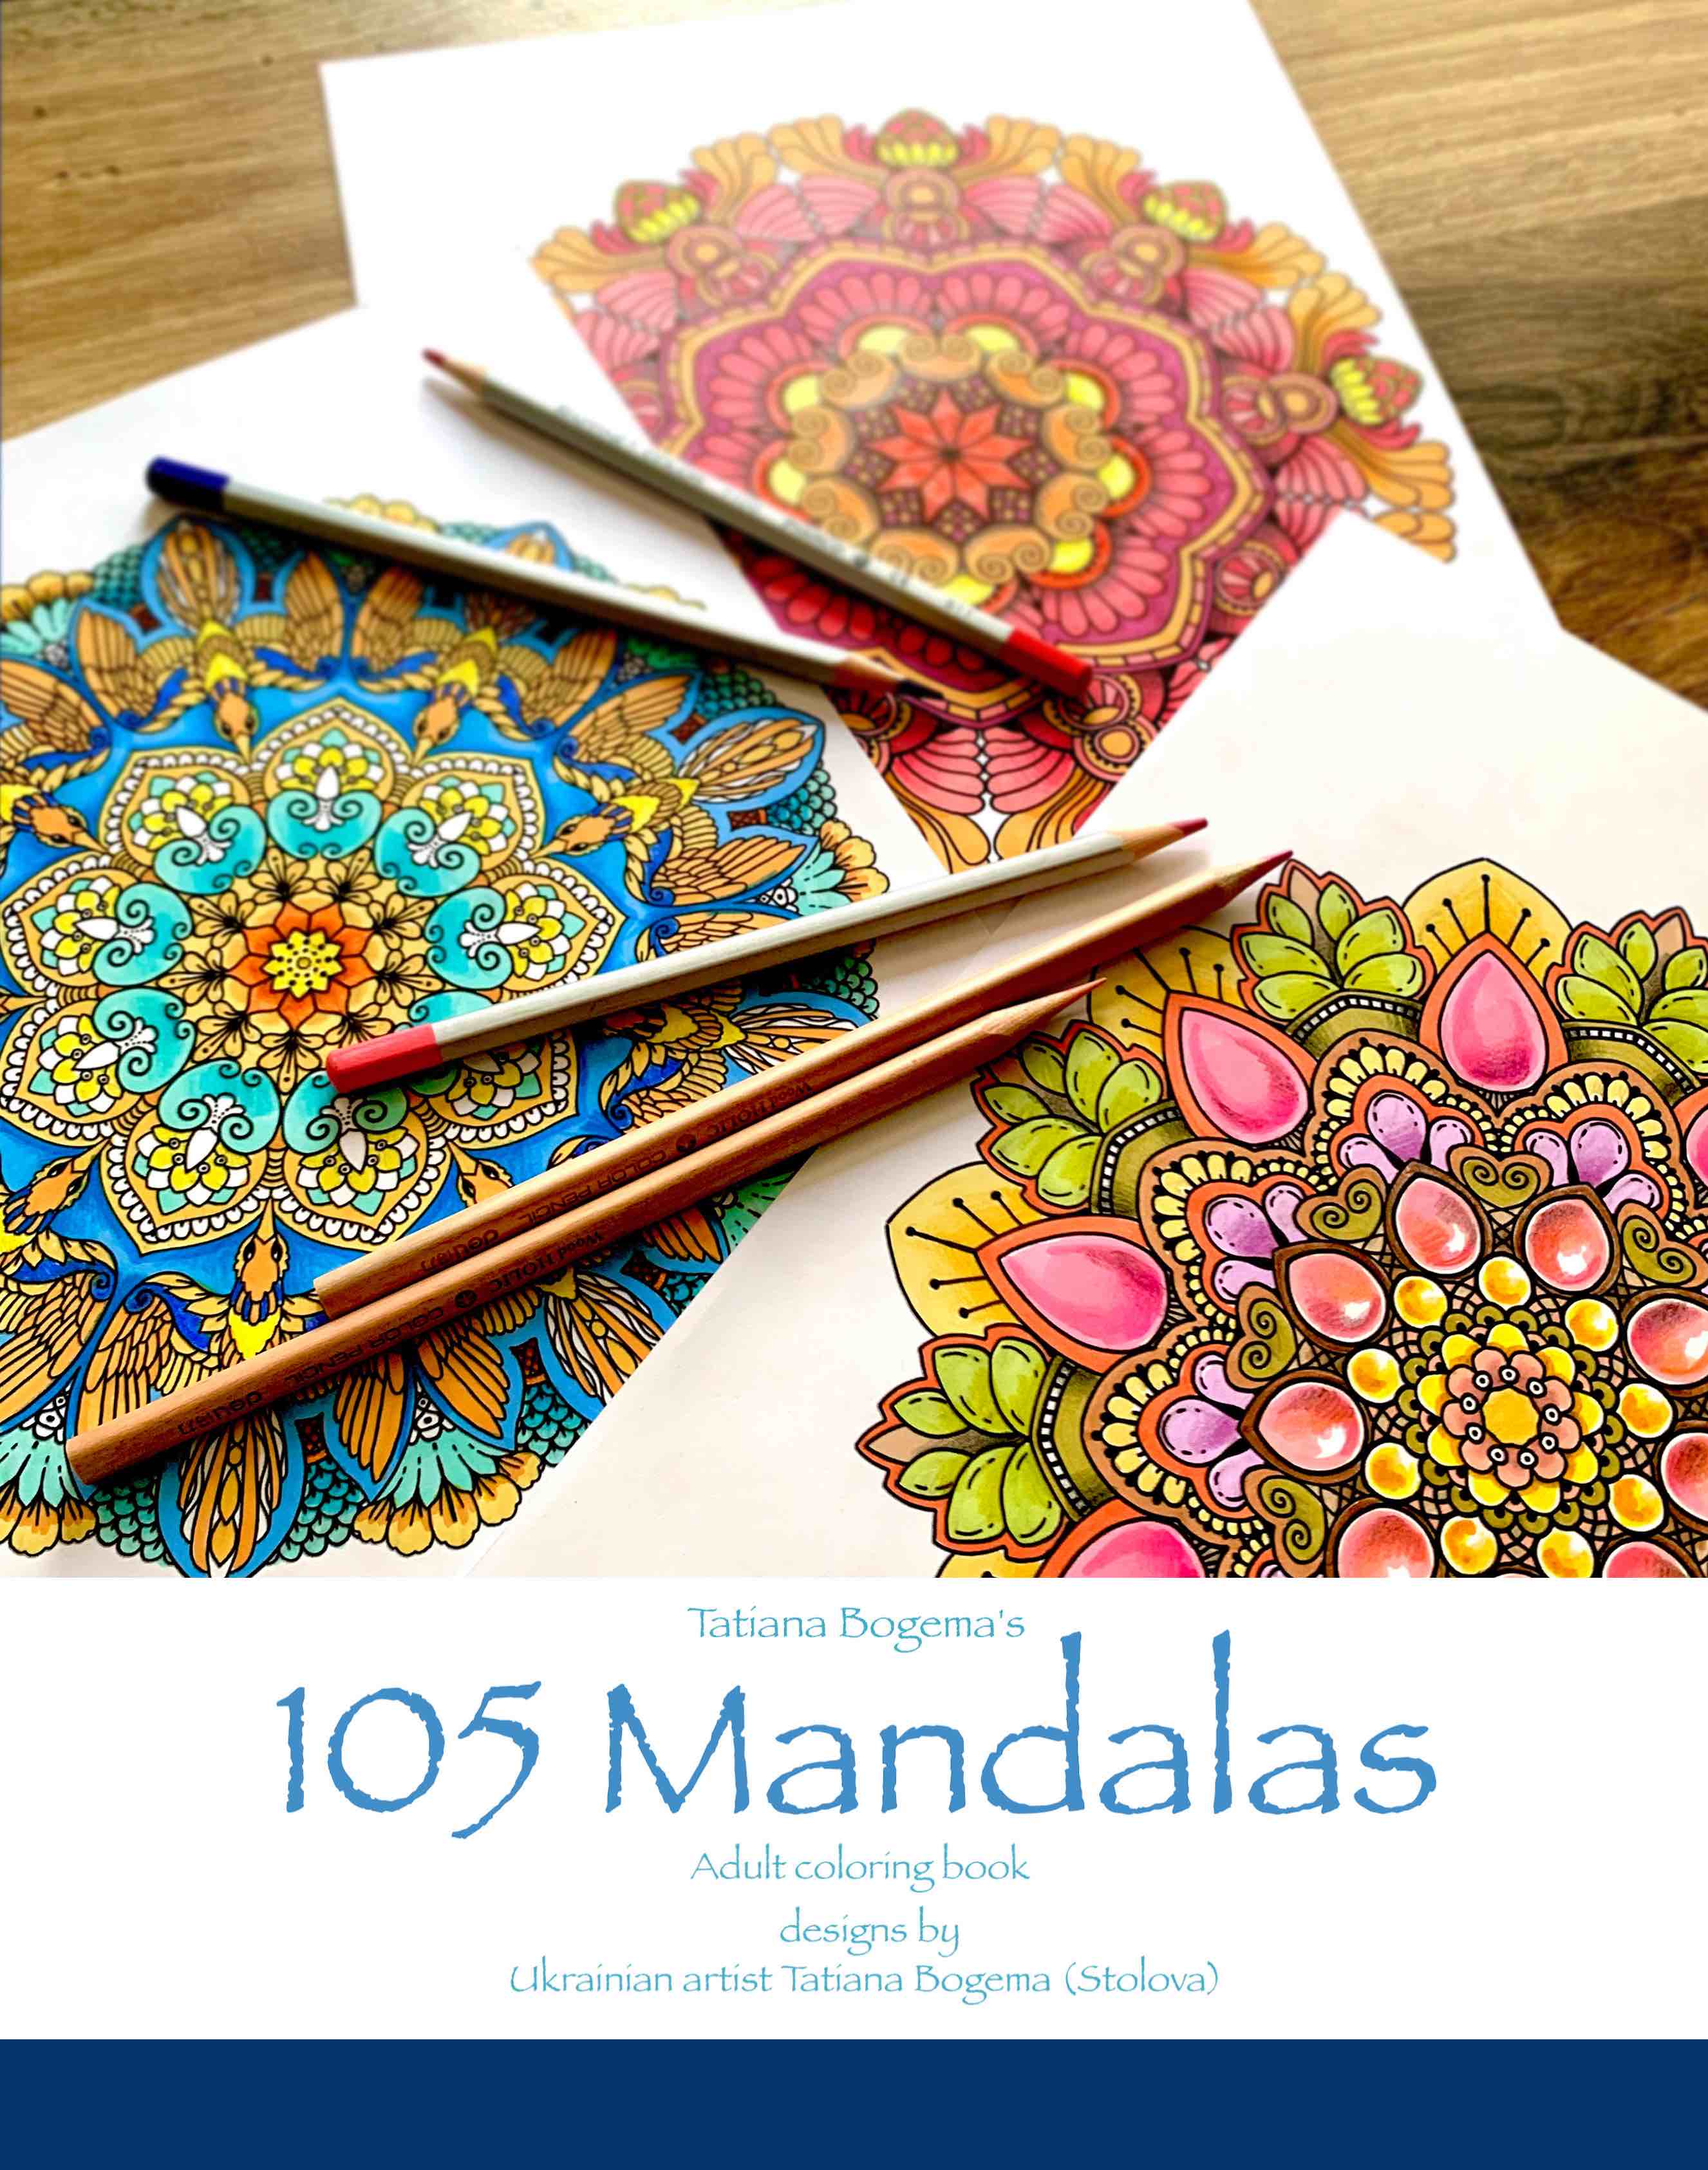 Tatiana Bogema's Mandala - Adult Coloring Book